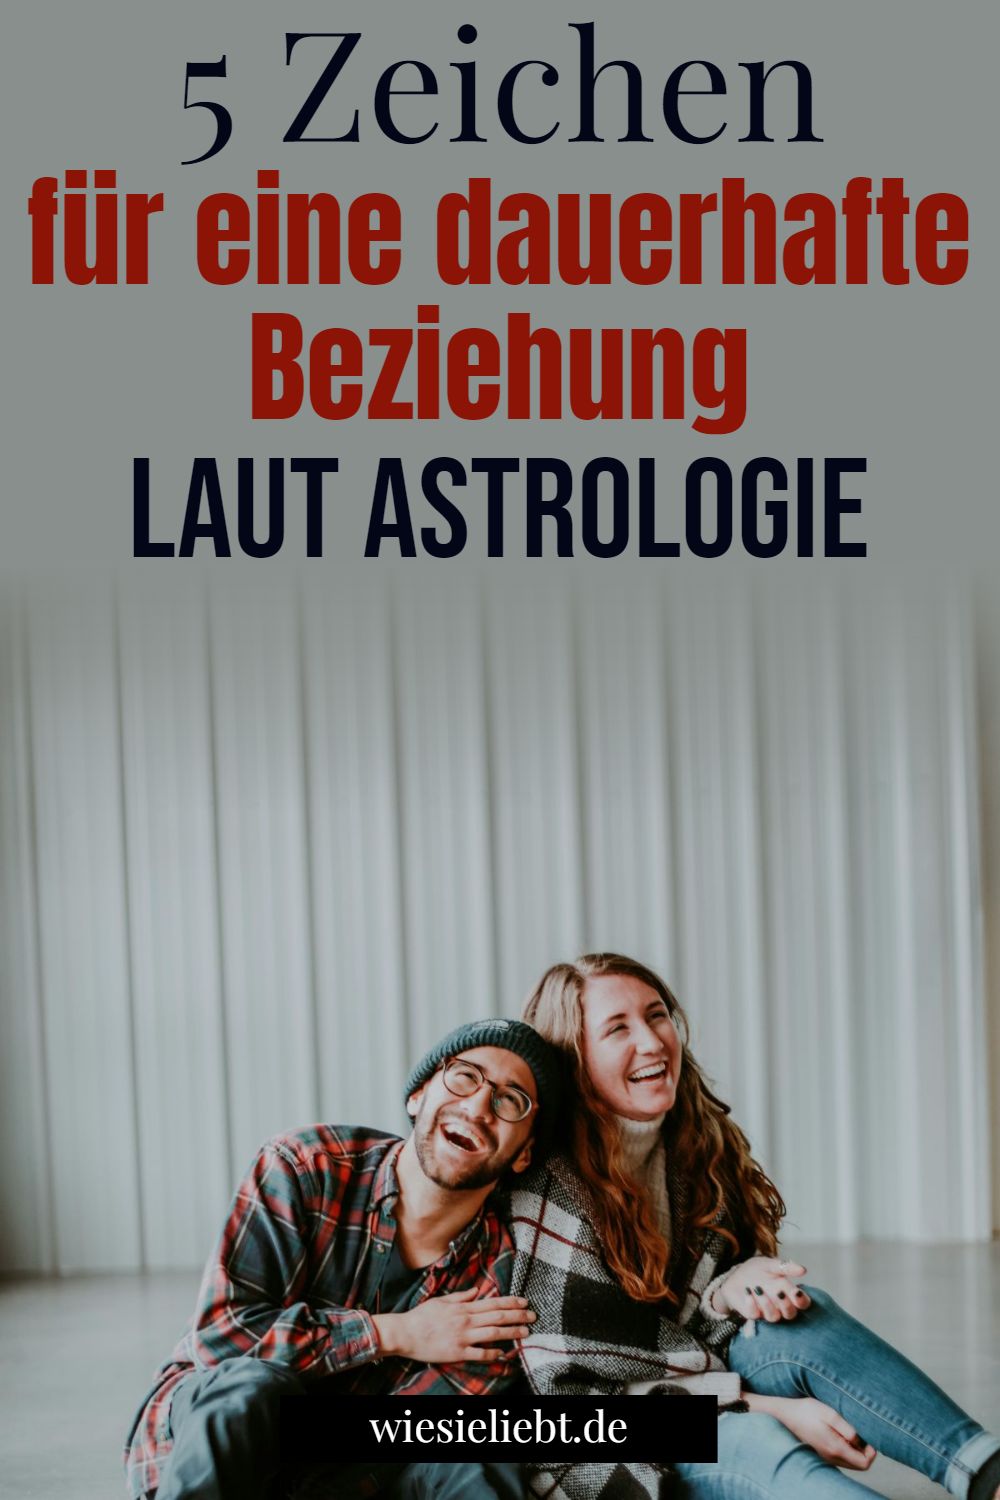 5 Zeichen für eine dauerhafte Beziehung laut Astrologie